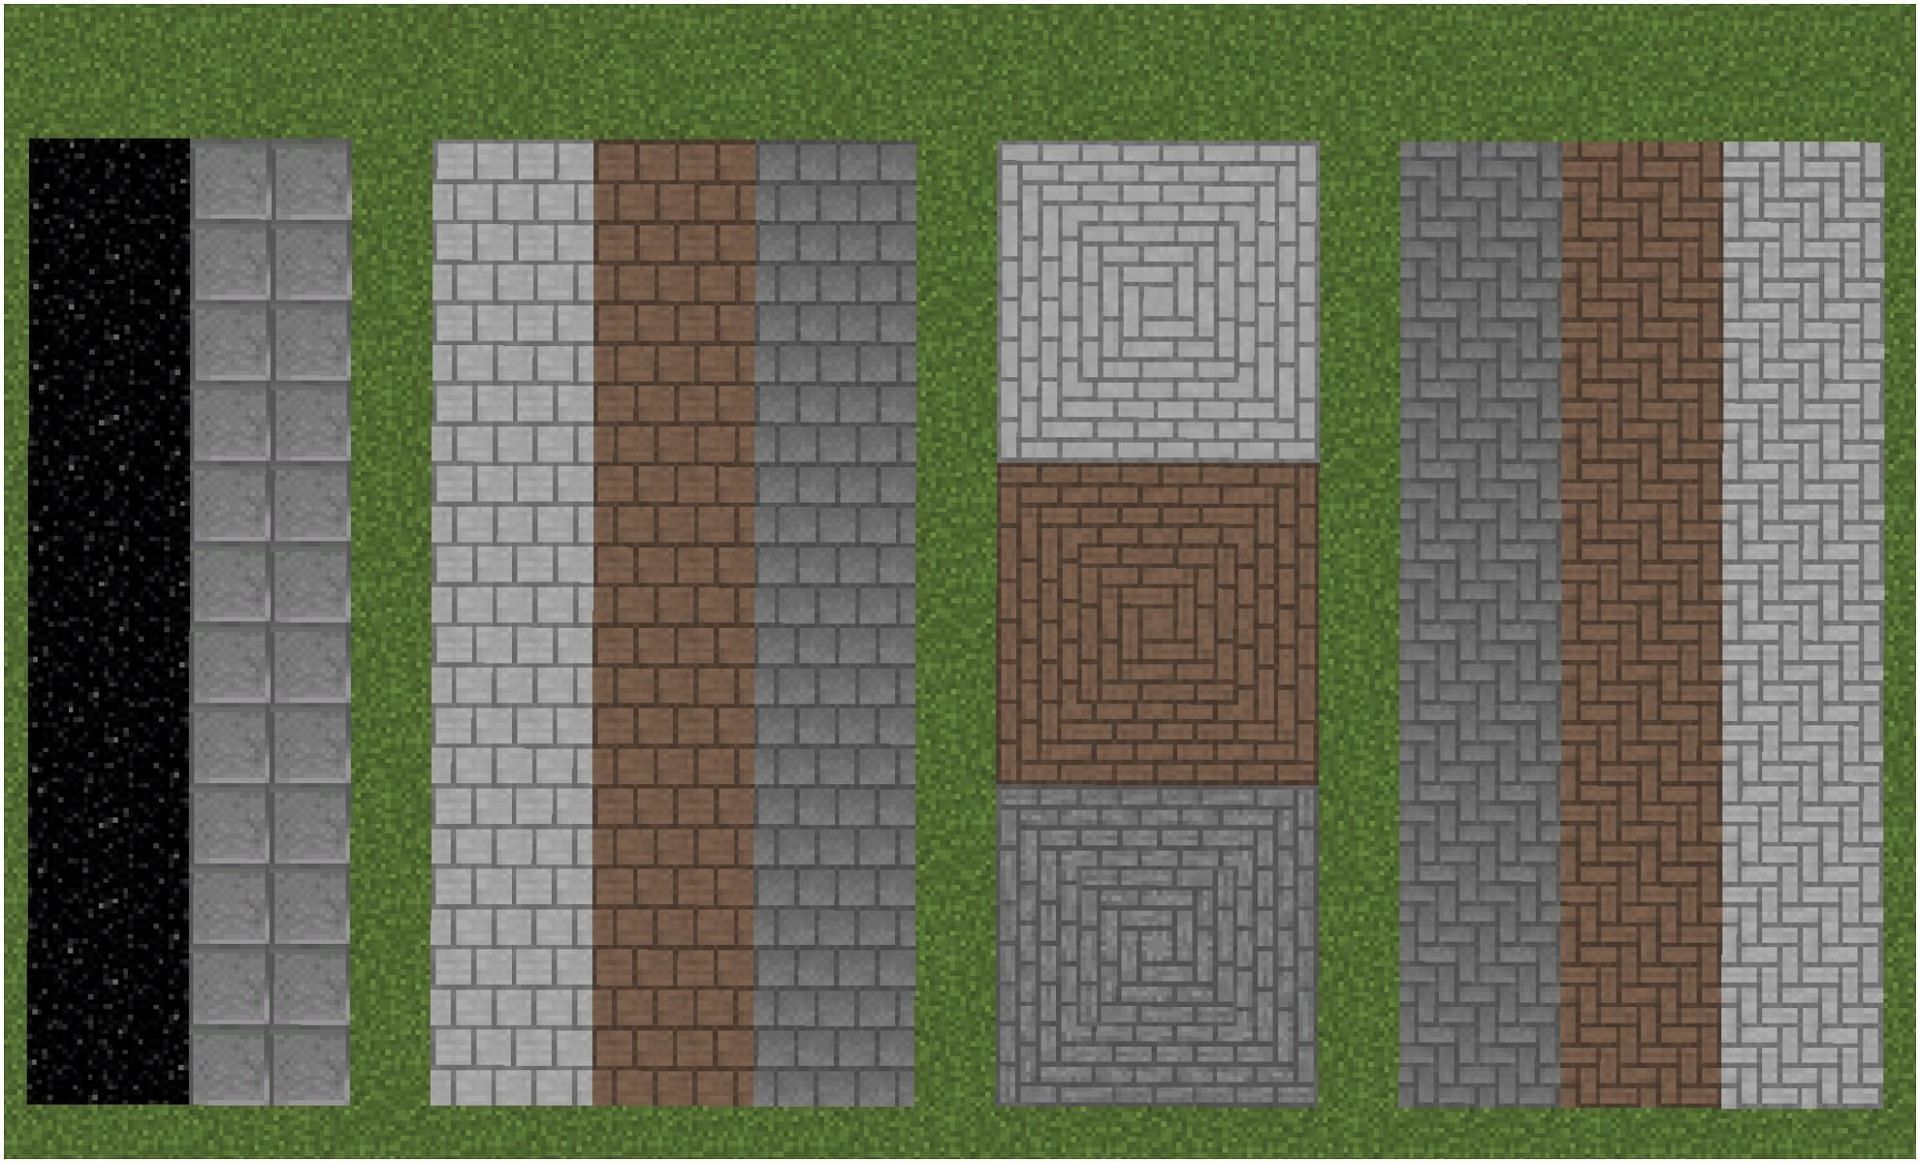 Some flooring ideas in Minecraft (Image via Minecraft)